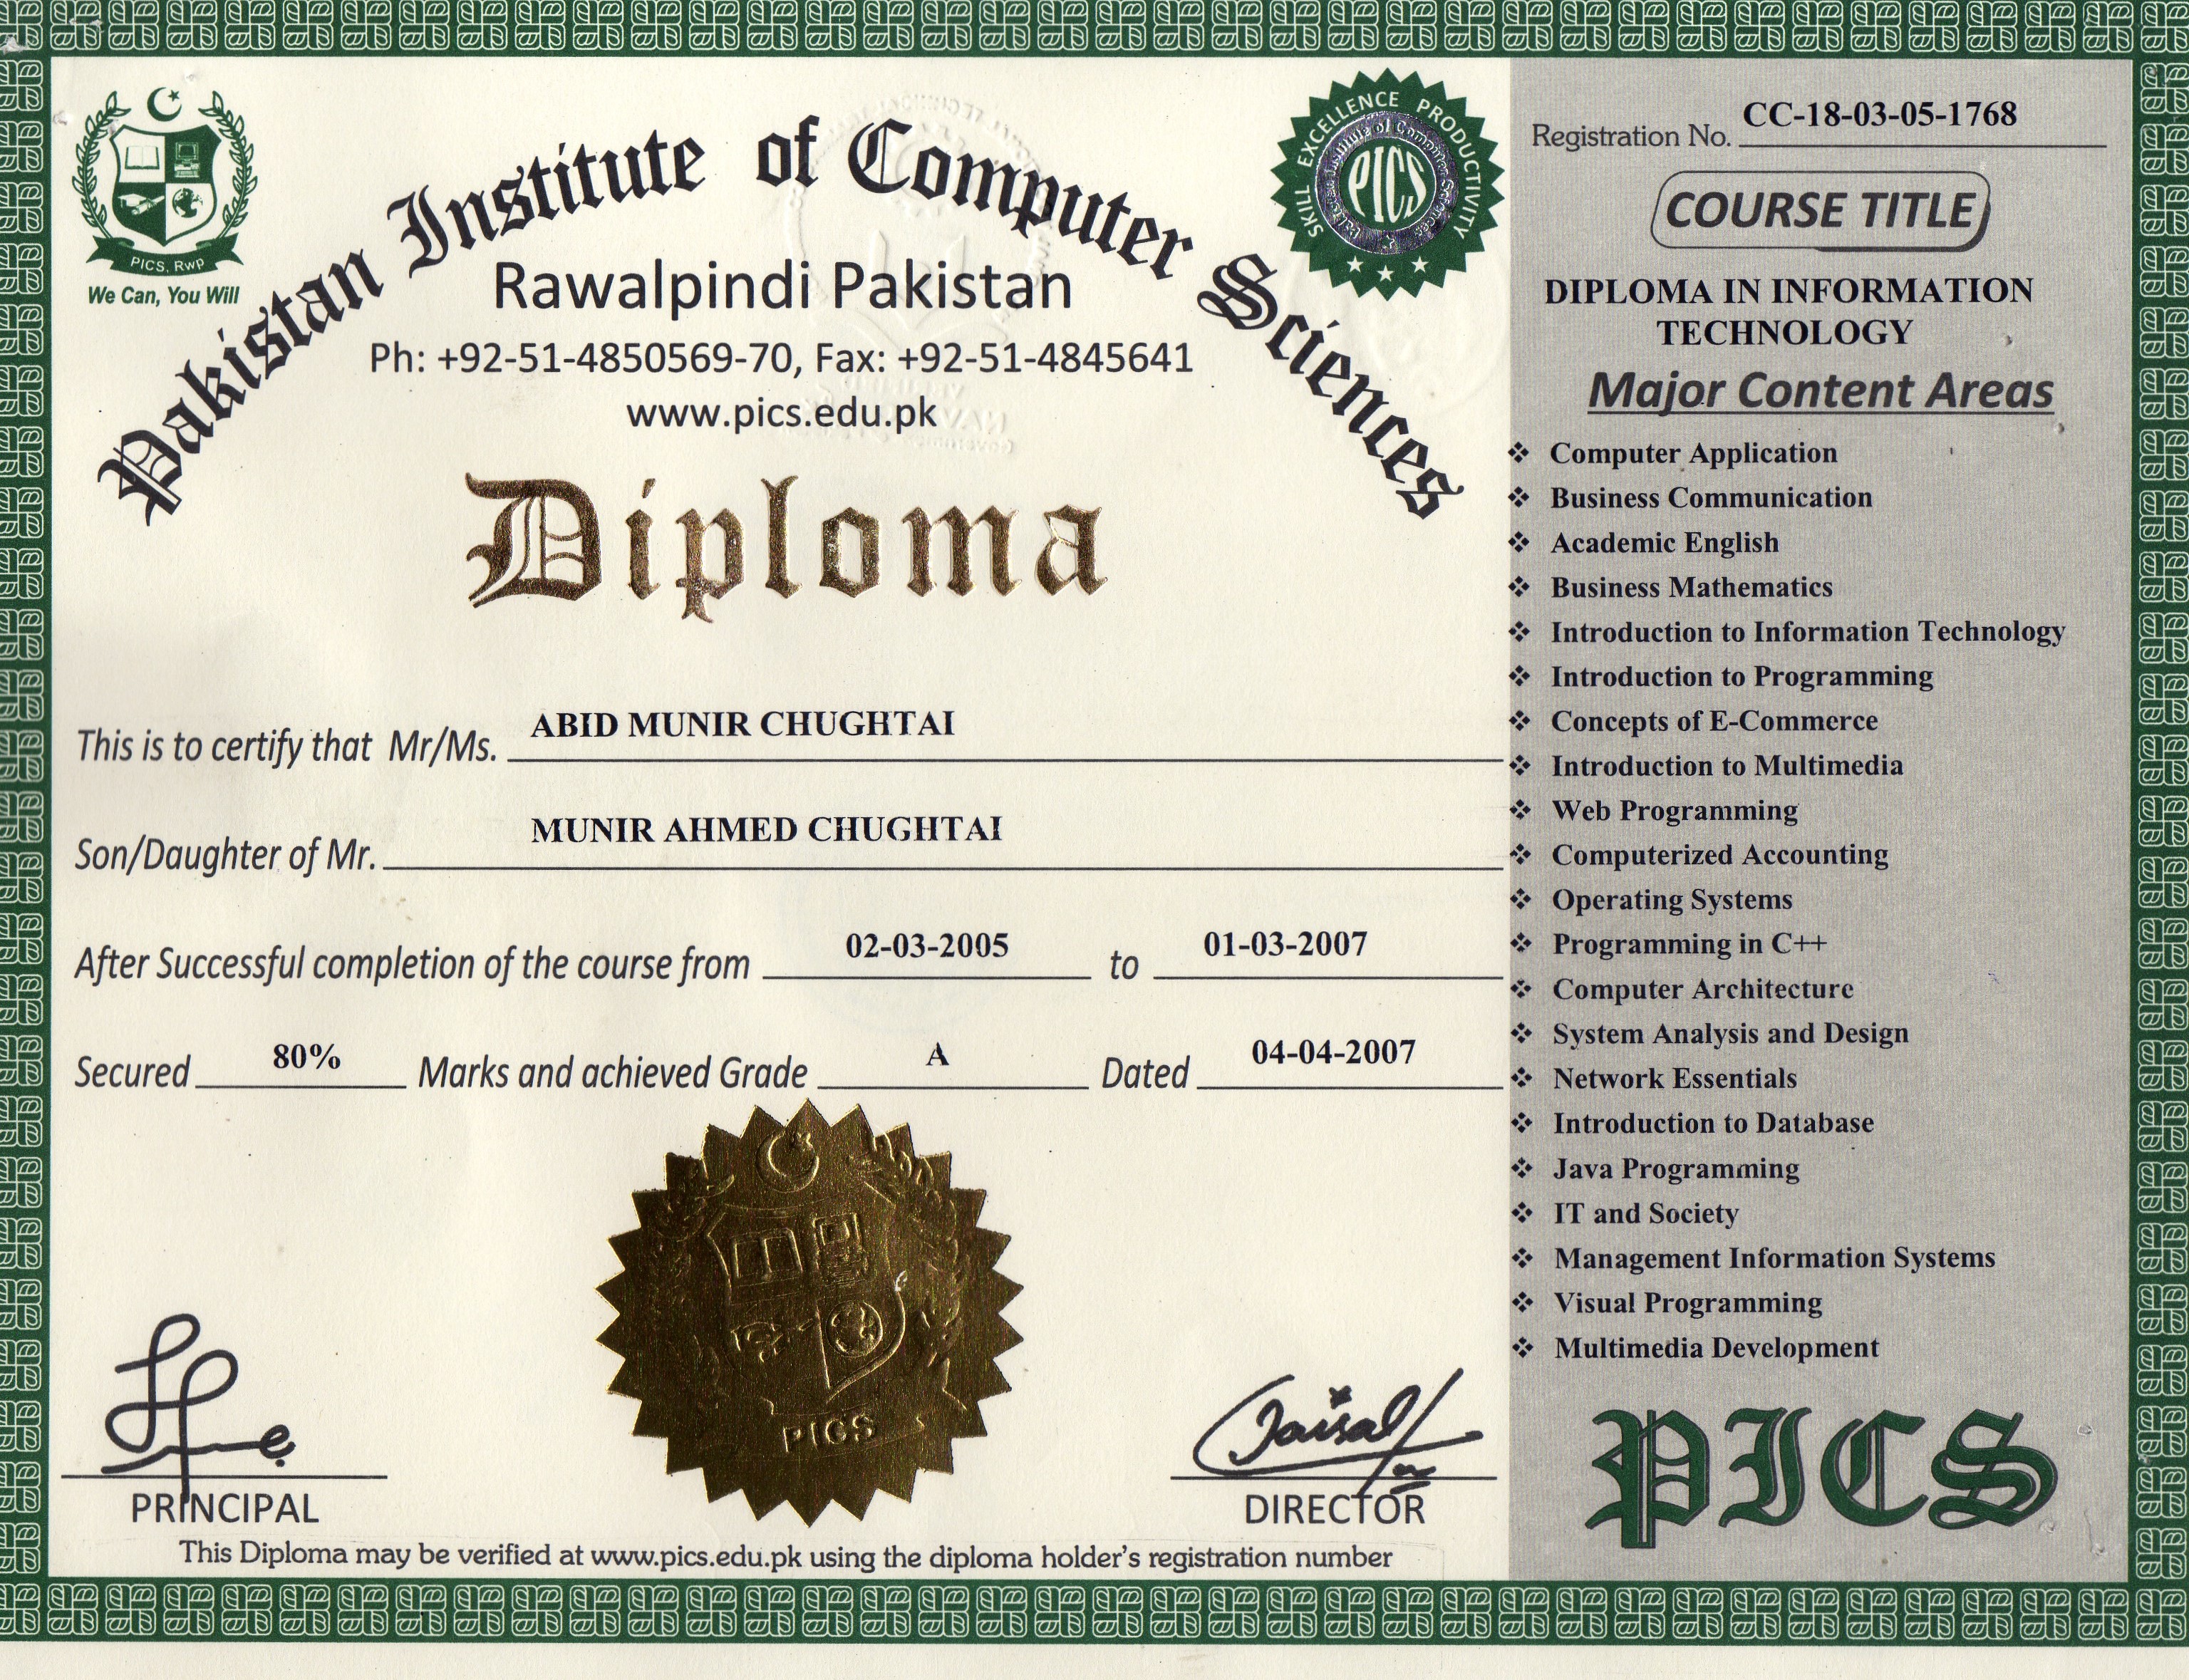 Peer certificate